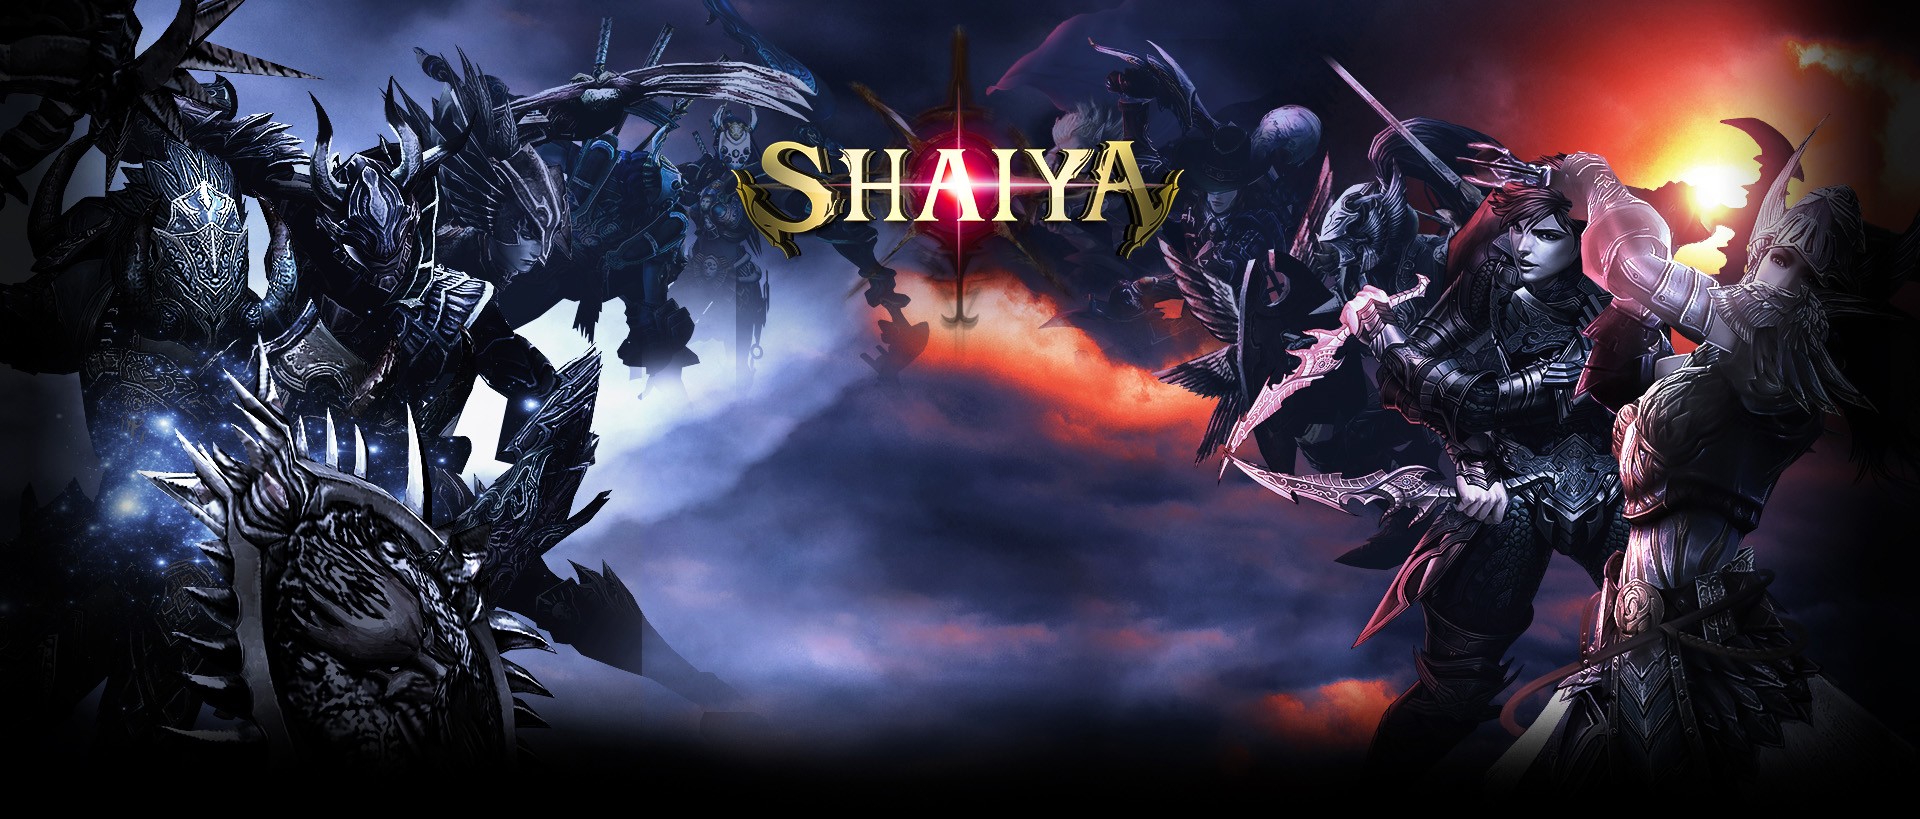 shaiya wallpaper,juego de acción y aventura,demonio,cg artwork,juego de pc,juegos